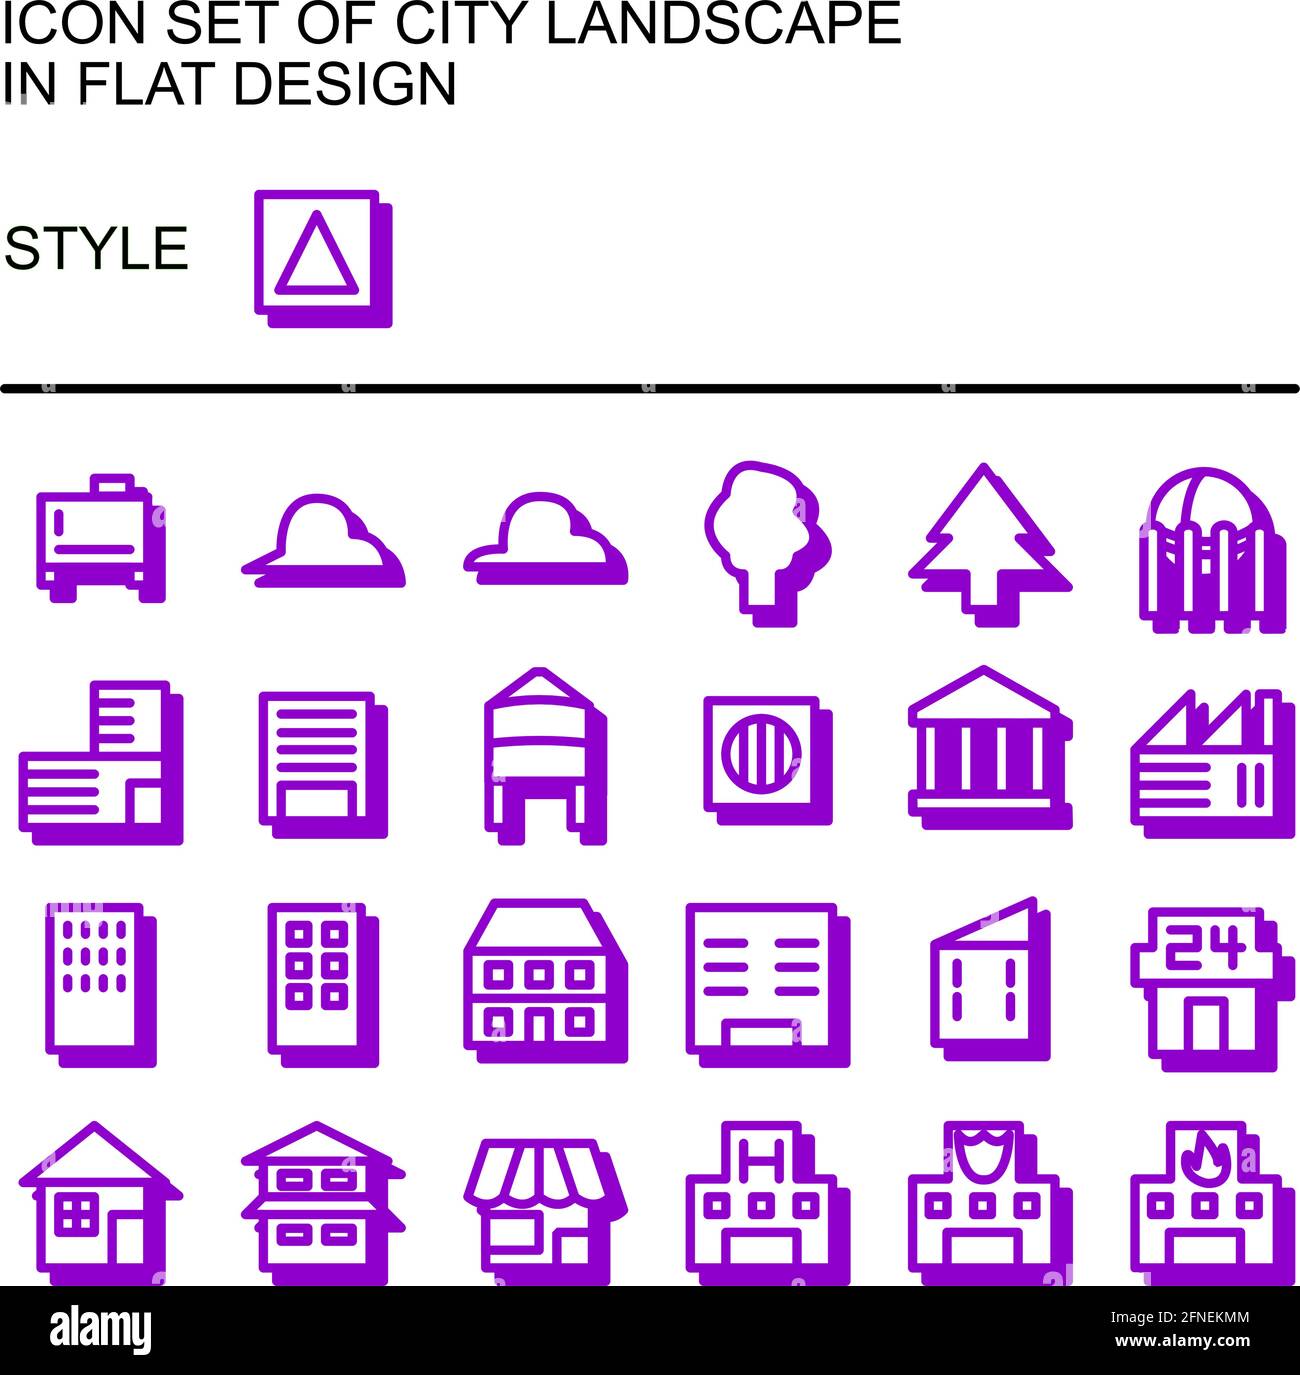 Stadtlandschaft Symbol in flachem Design mit violetten Linien, weißen Füllungen, Drop Shadow of the Purple gesetzt. Stock Vektor